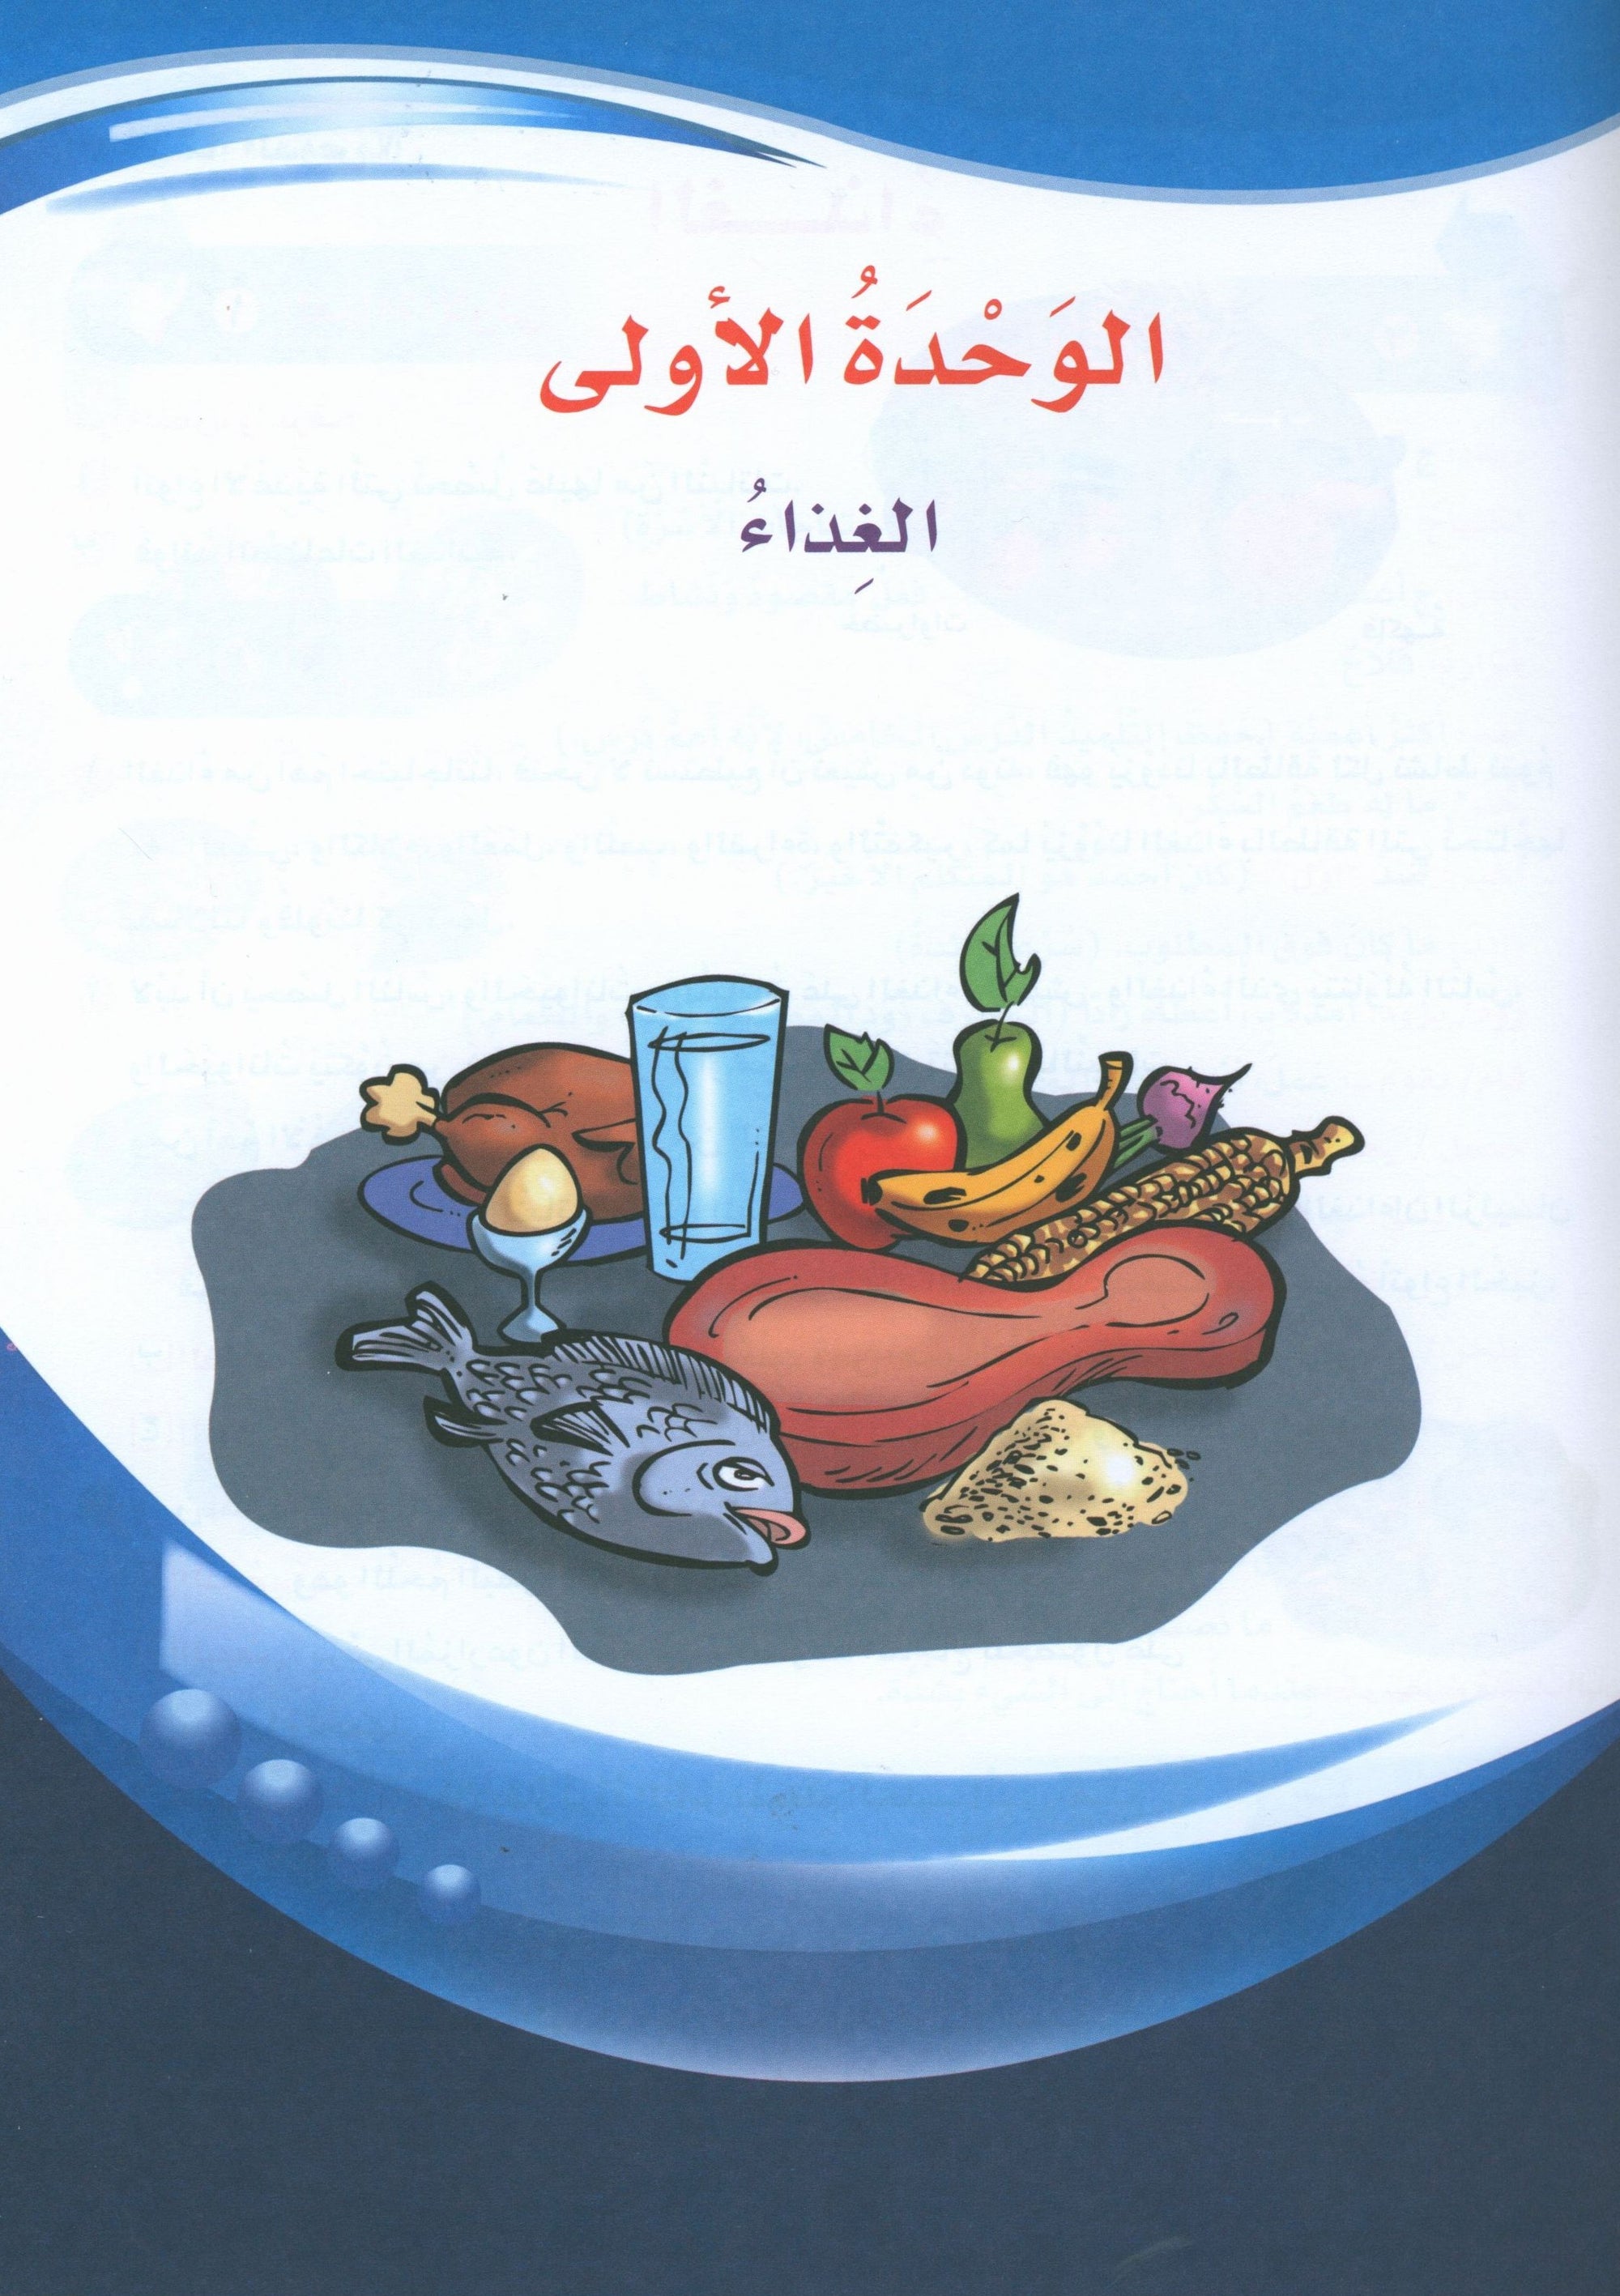 ICO Learn Arabic Textbook Level 6 Part 1 تعلم العربية كتاب التلميذ